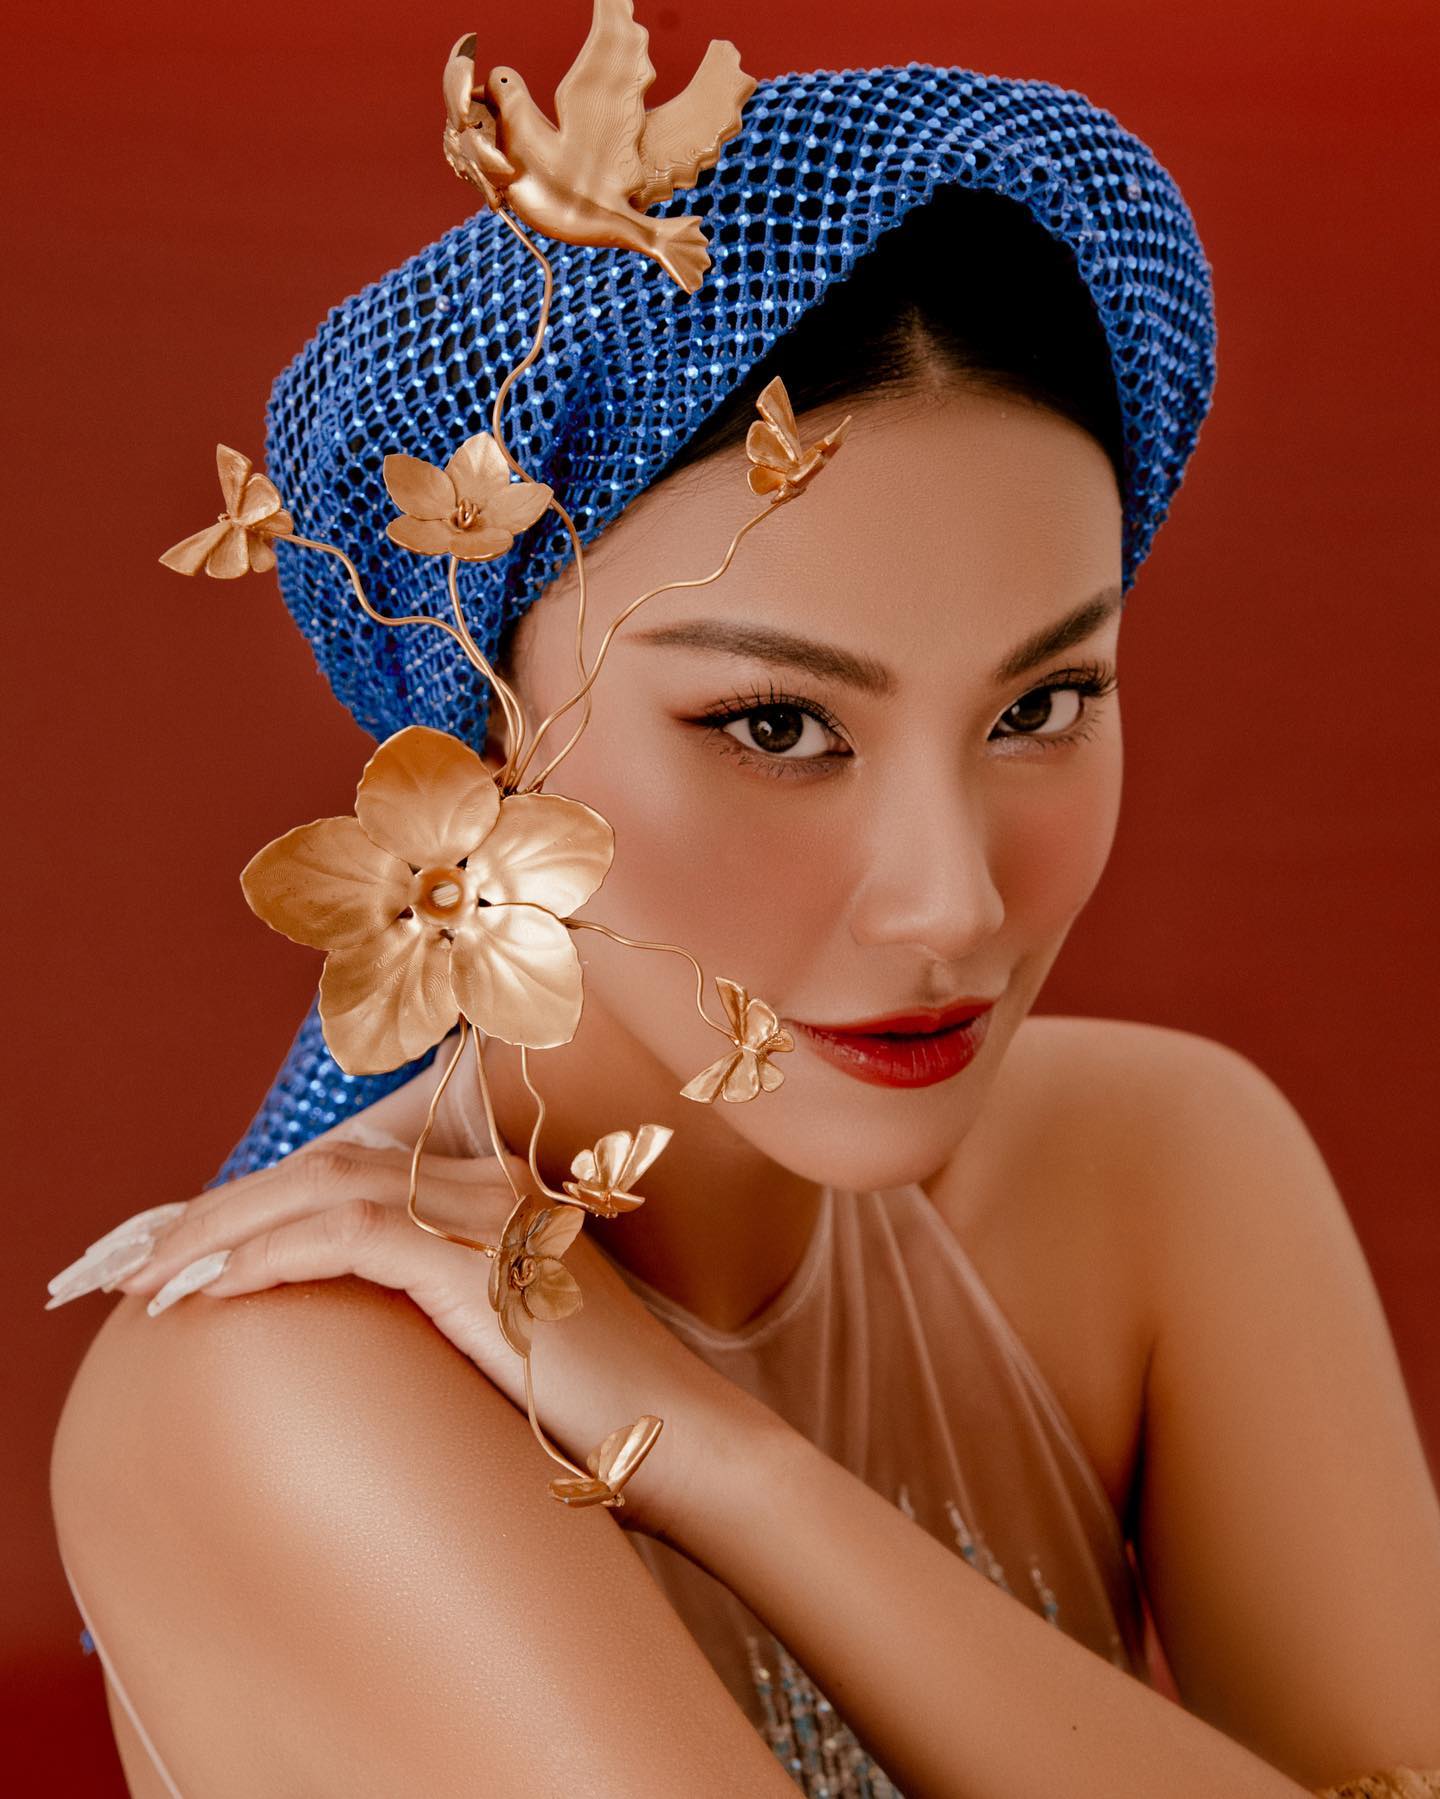 Á hậu Siêu quốc gia Kim Duyên gợi cảm trong bộ ảnh Tết độc đáo - Ảnh 1.